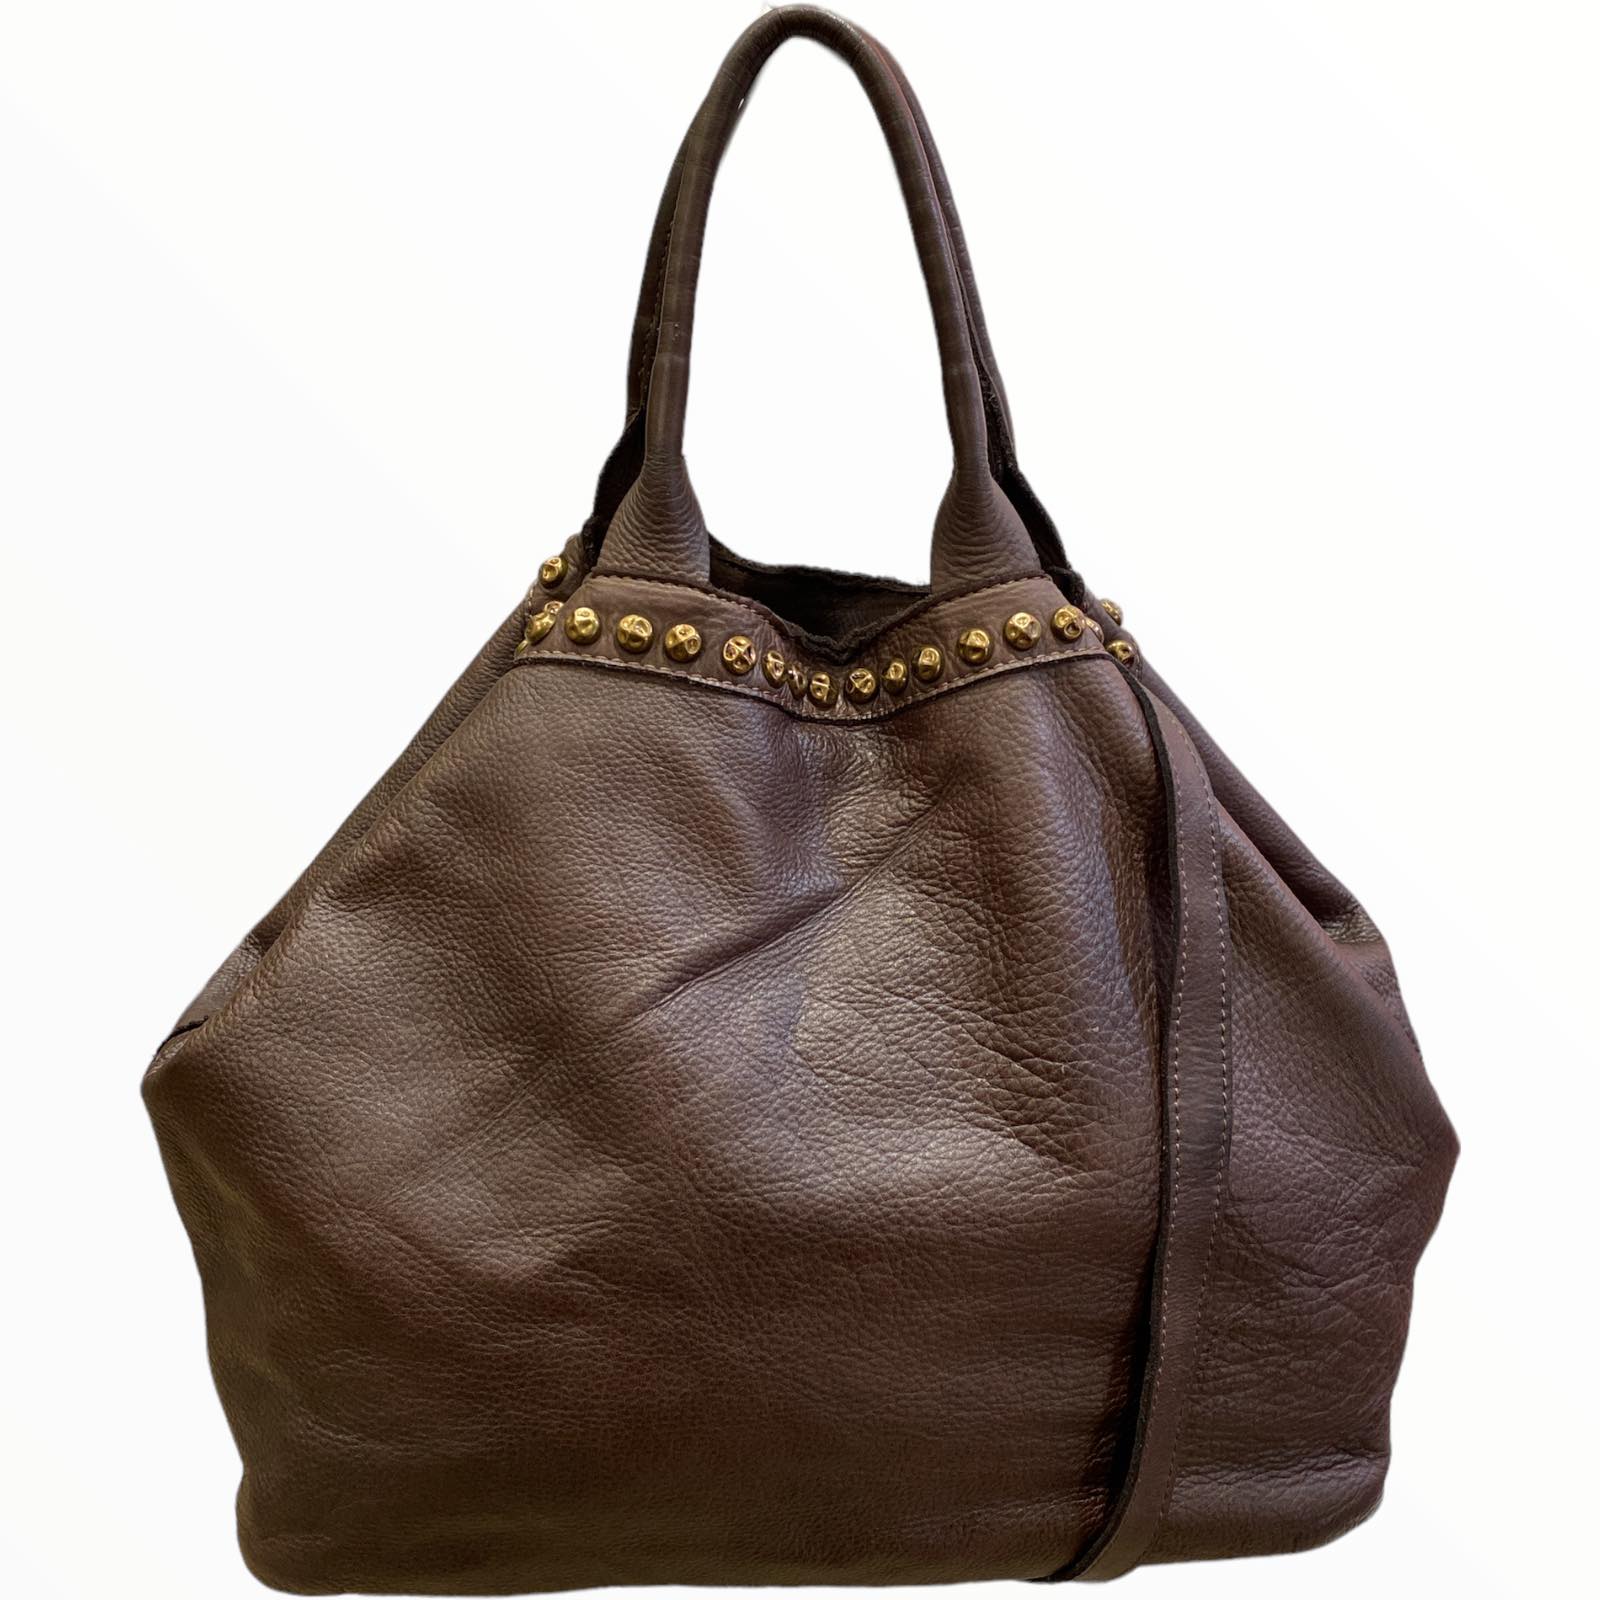 Brown large leather shoulder bag